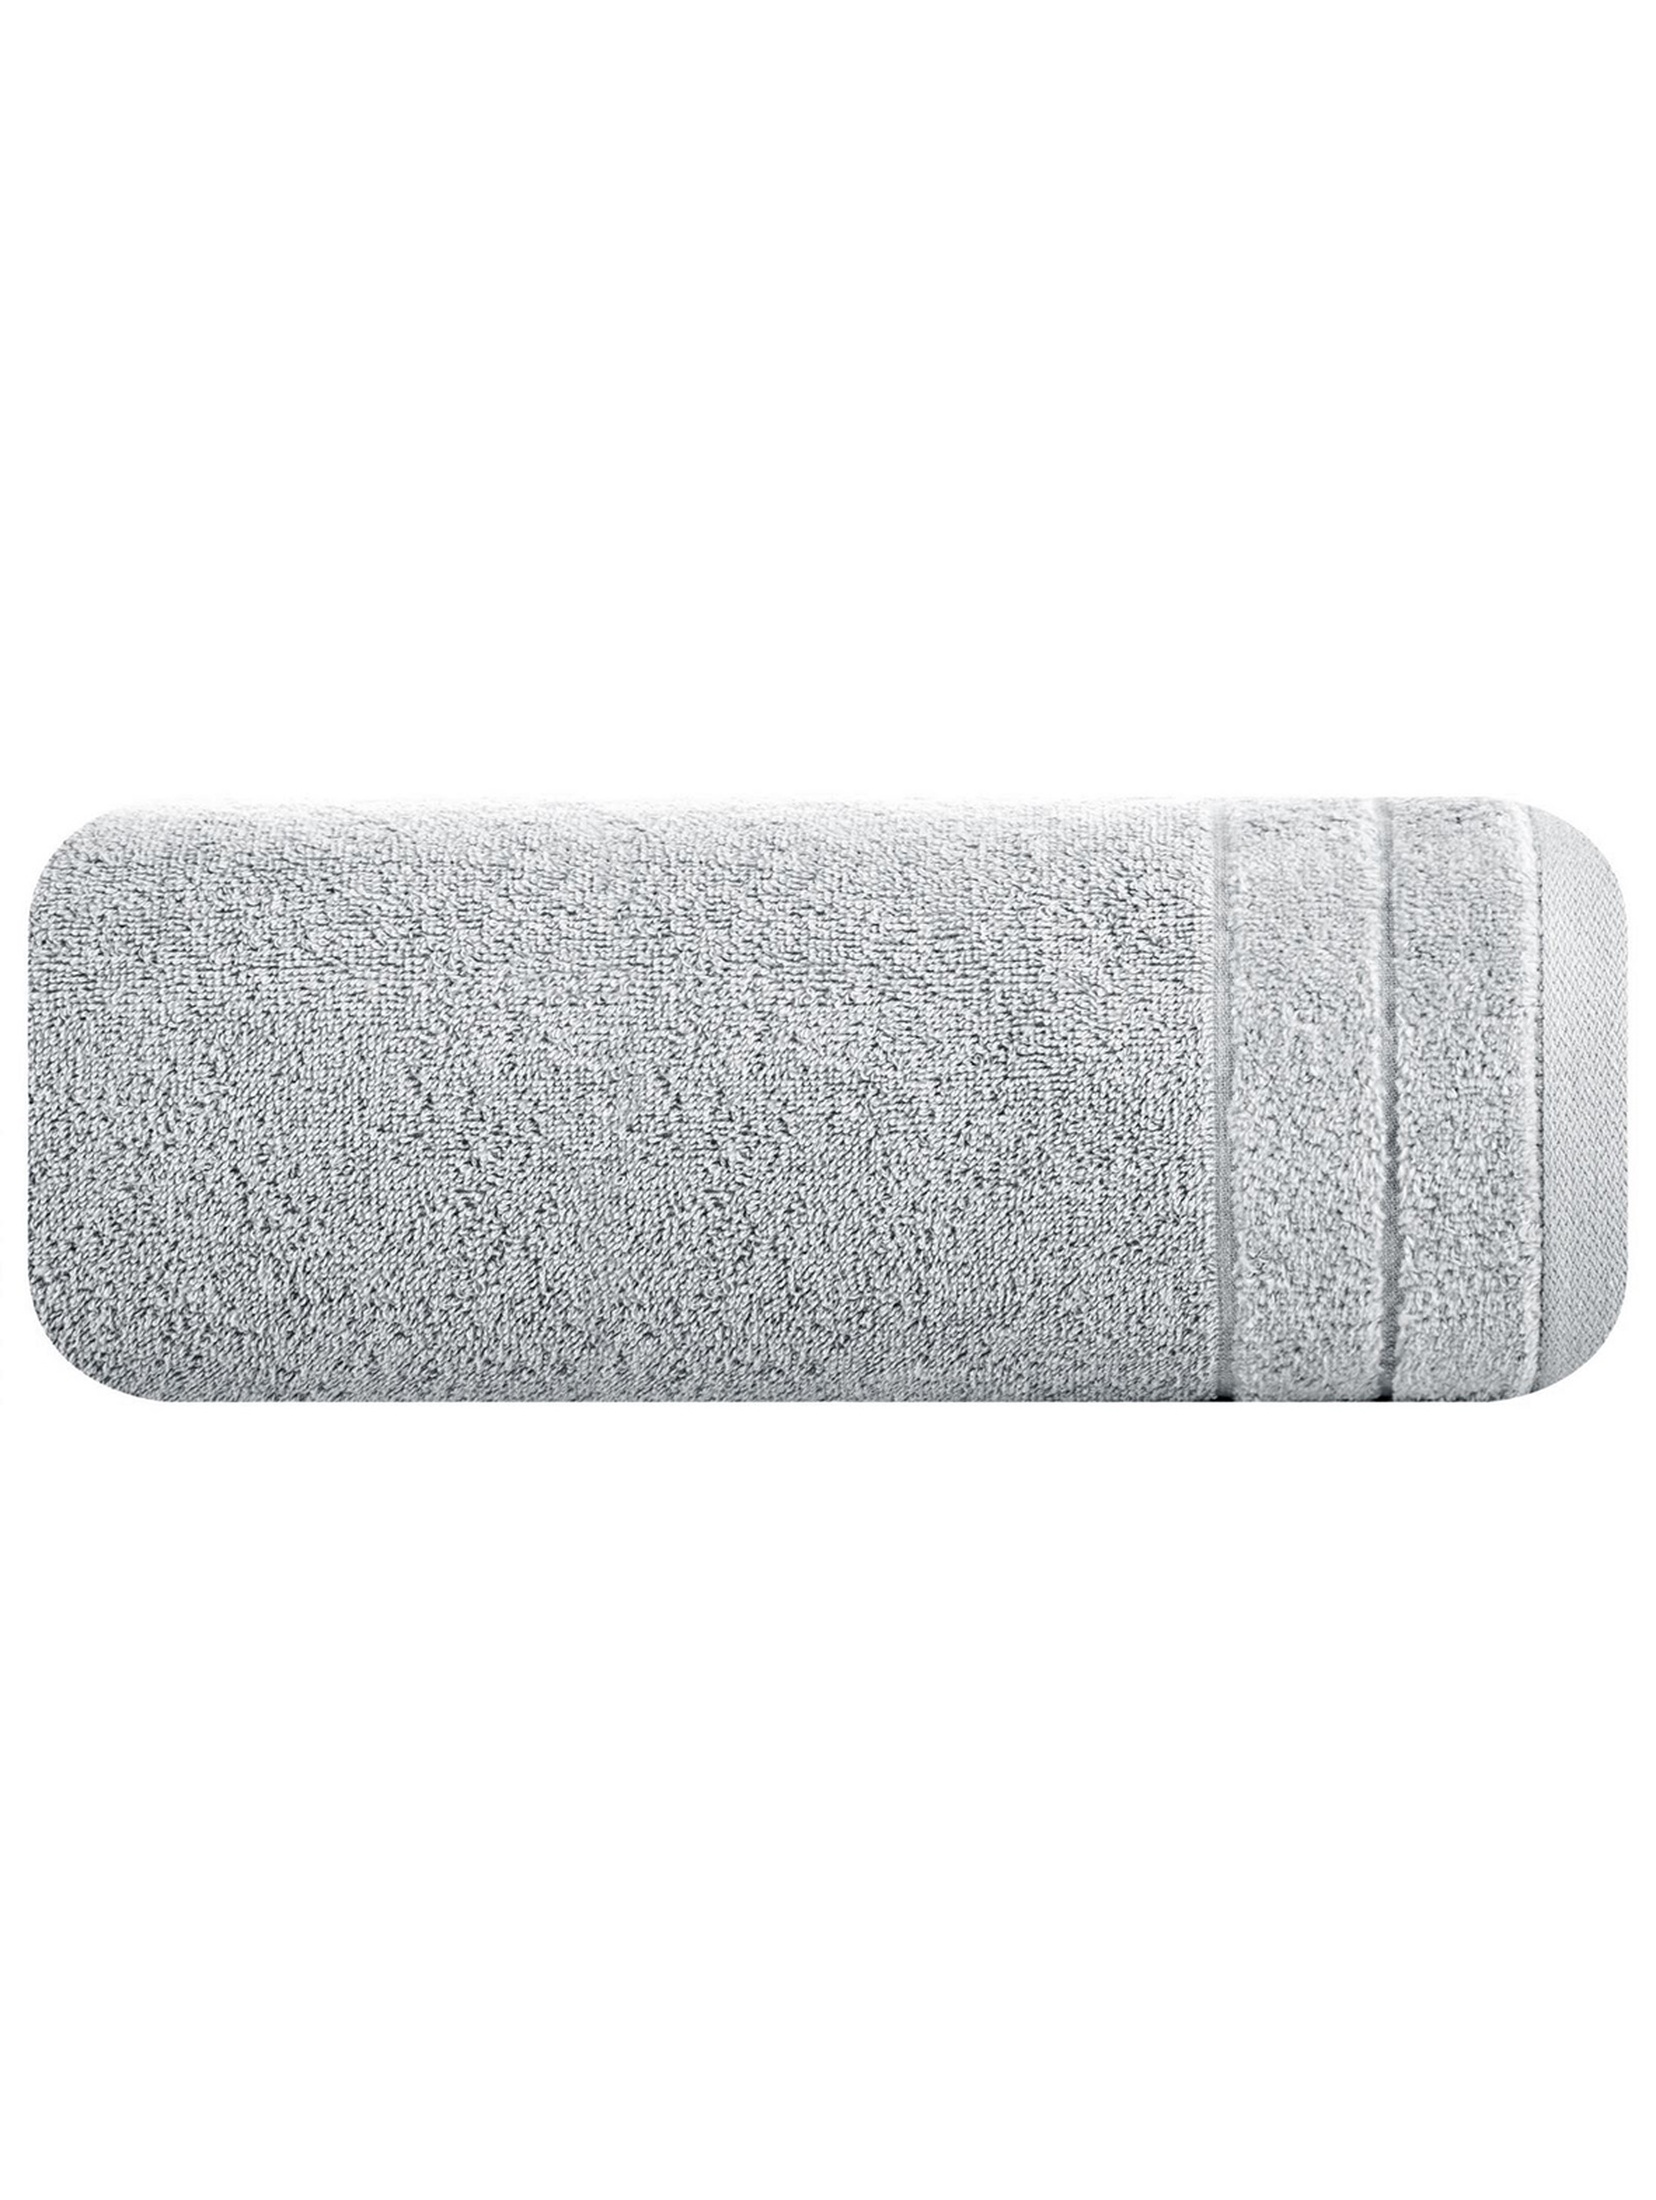 Ręcznik Damla 50x90 cm - jasnoszary